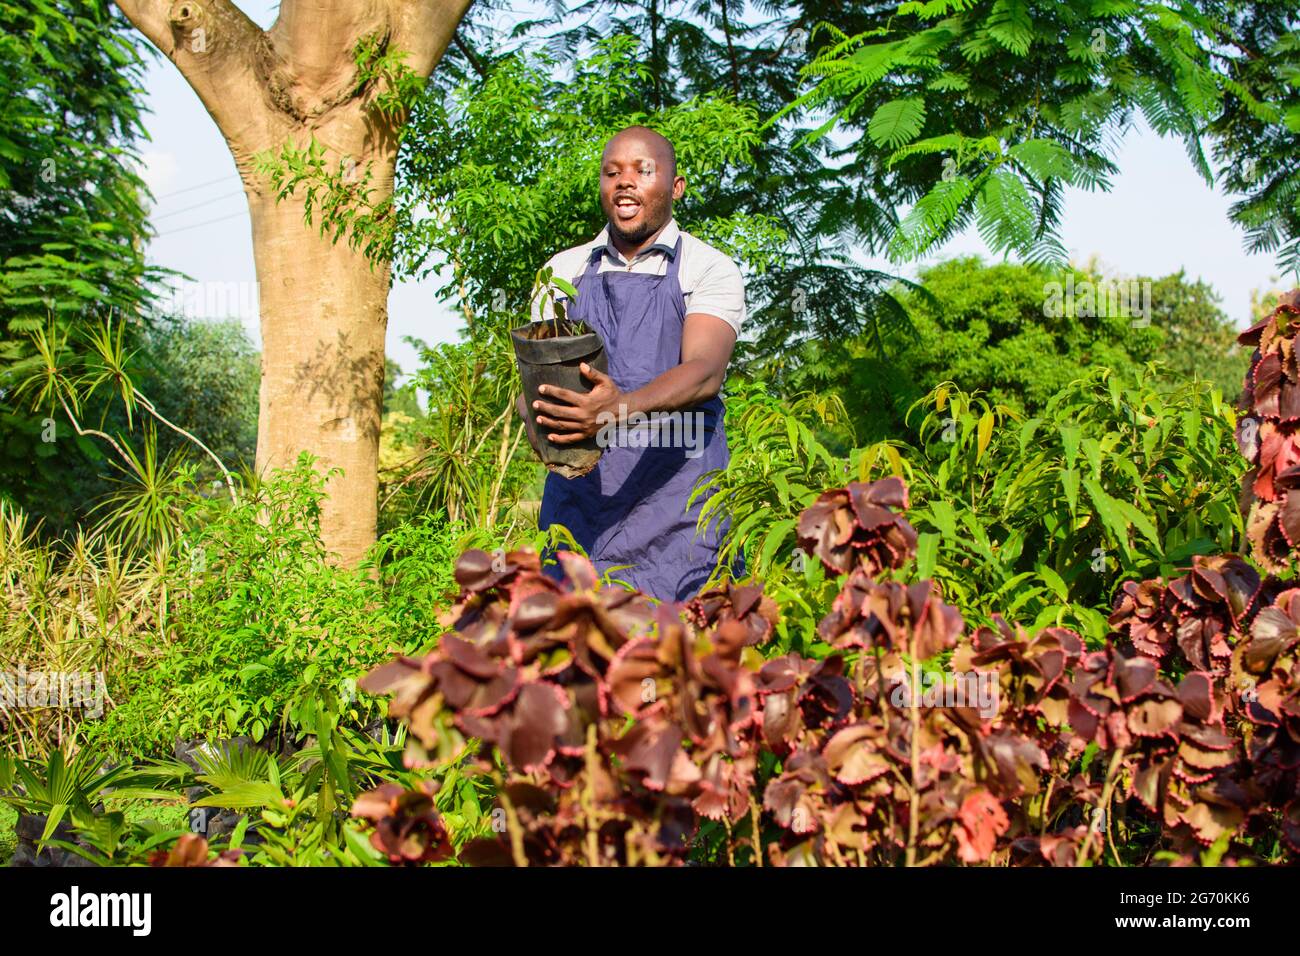 Una mujer africana sonriente jardinera, florista o horticultor usando un delantal y un sombrero, sosteniendo una bolsa de planta mientras trabaja en un flujo verde y colorido Foto de stock